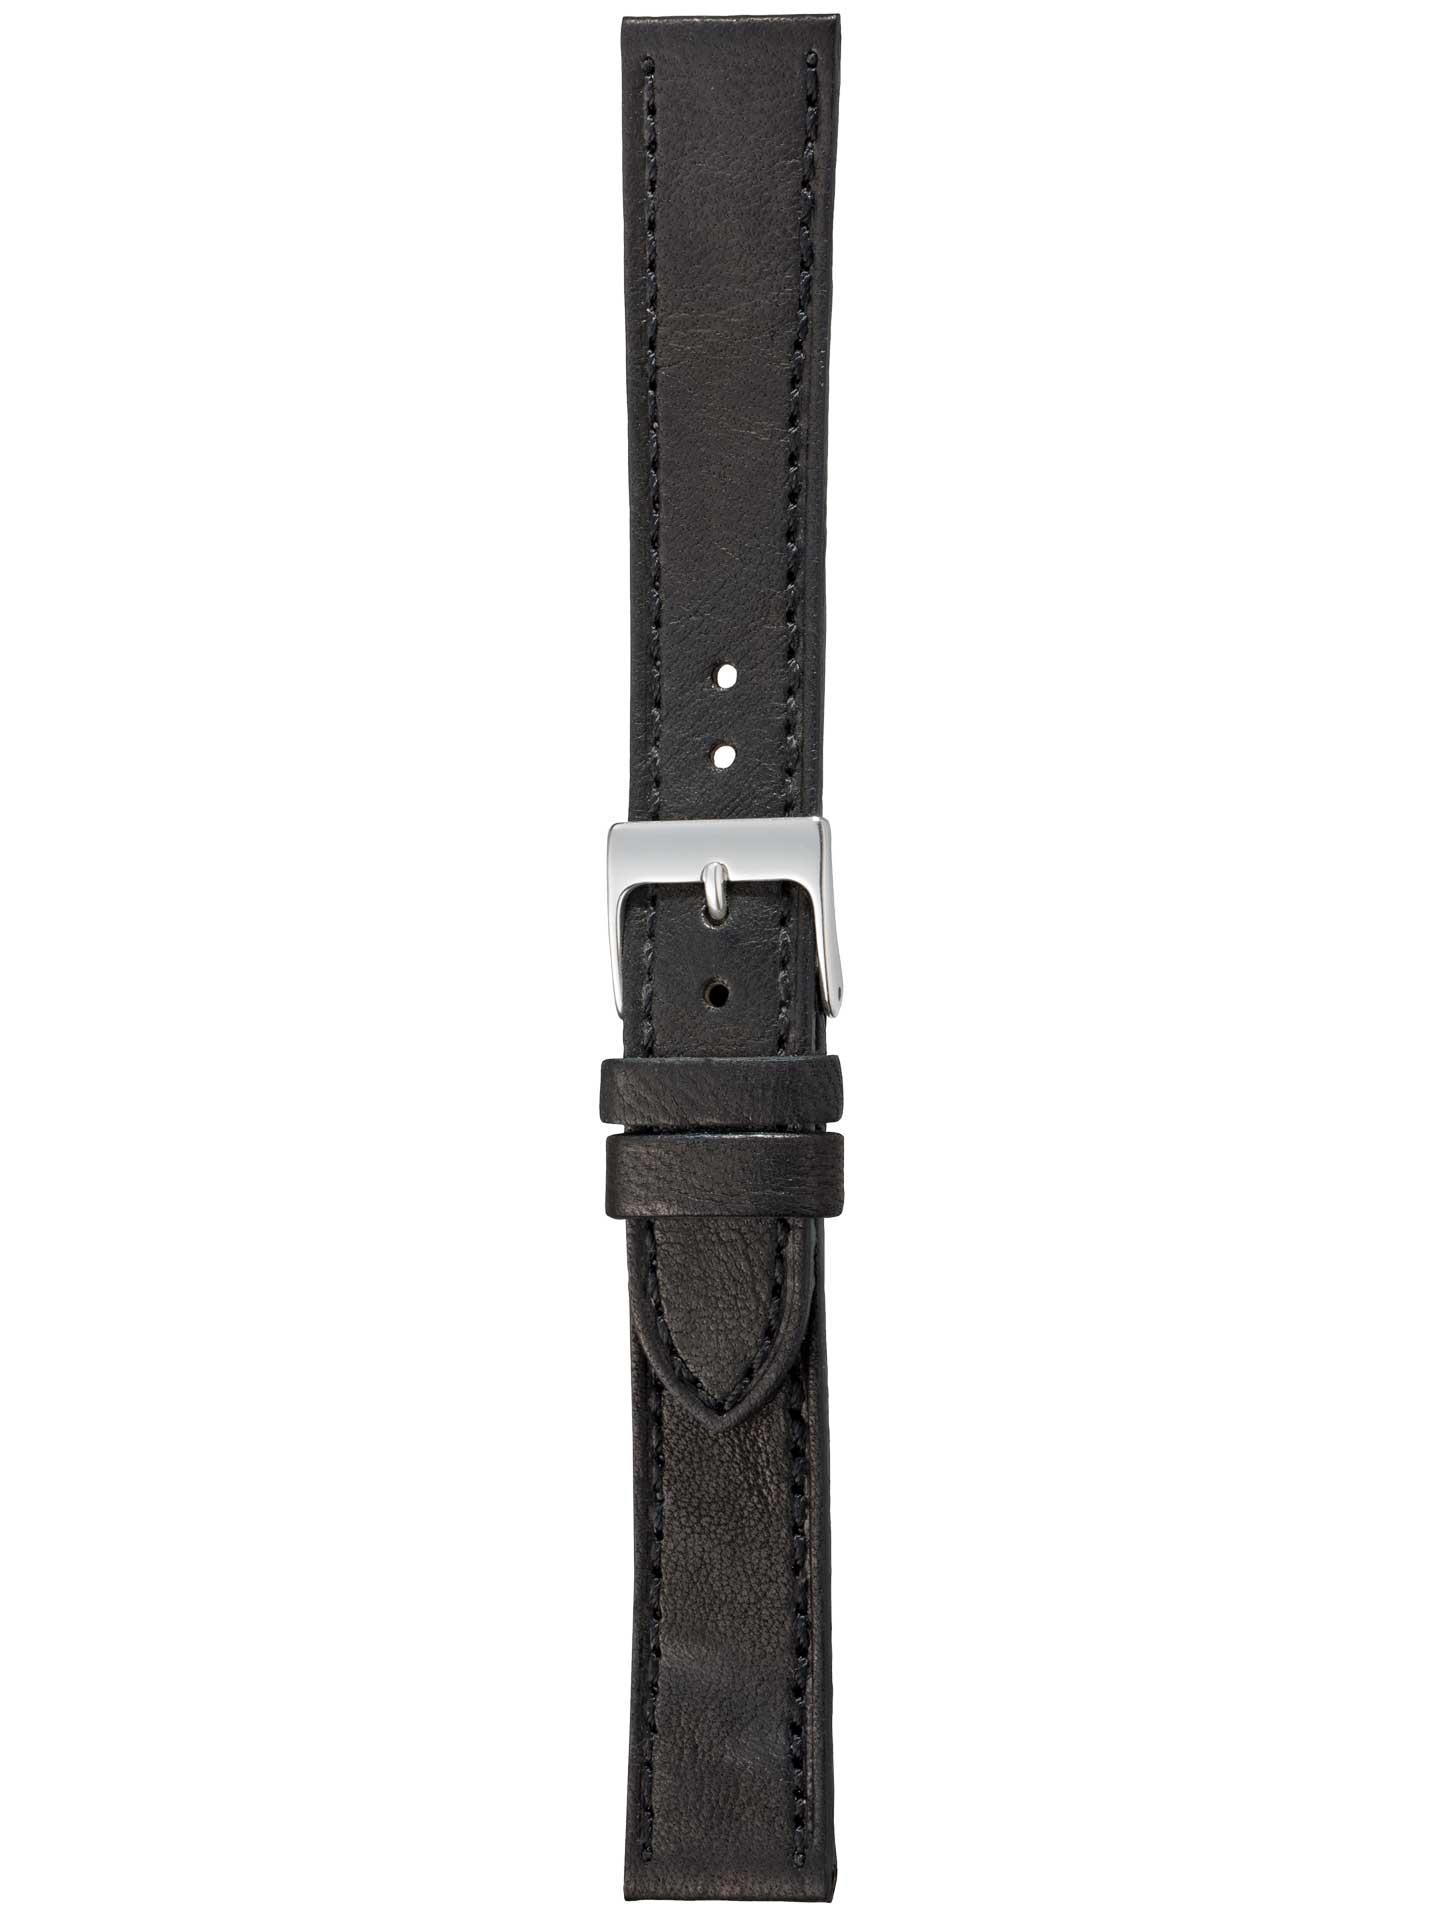 Lederband Piemont 18mm schwarz